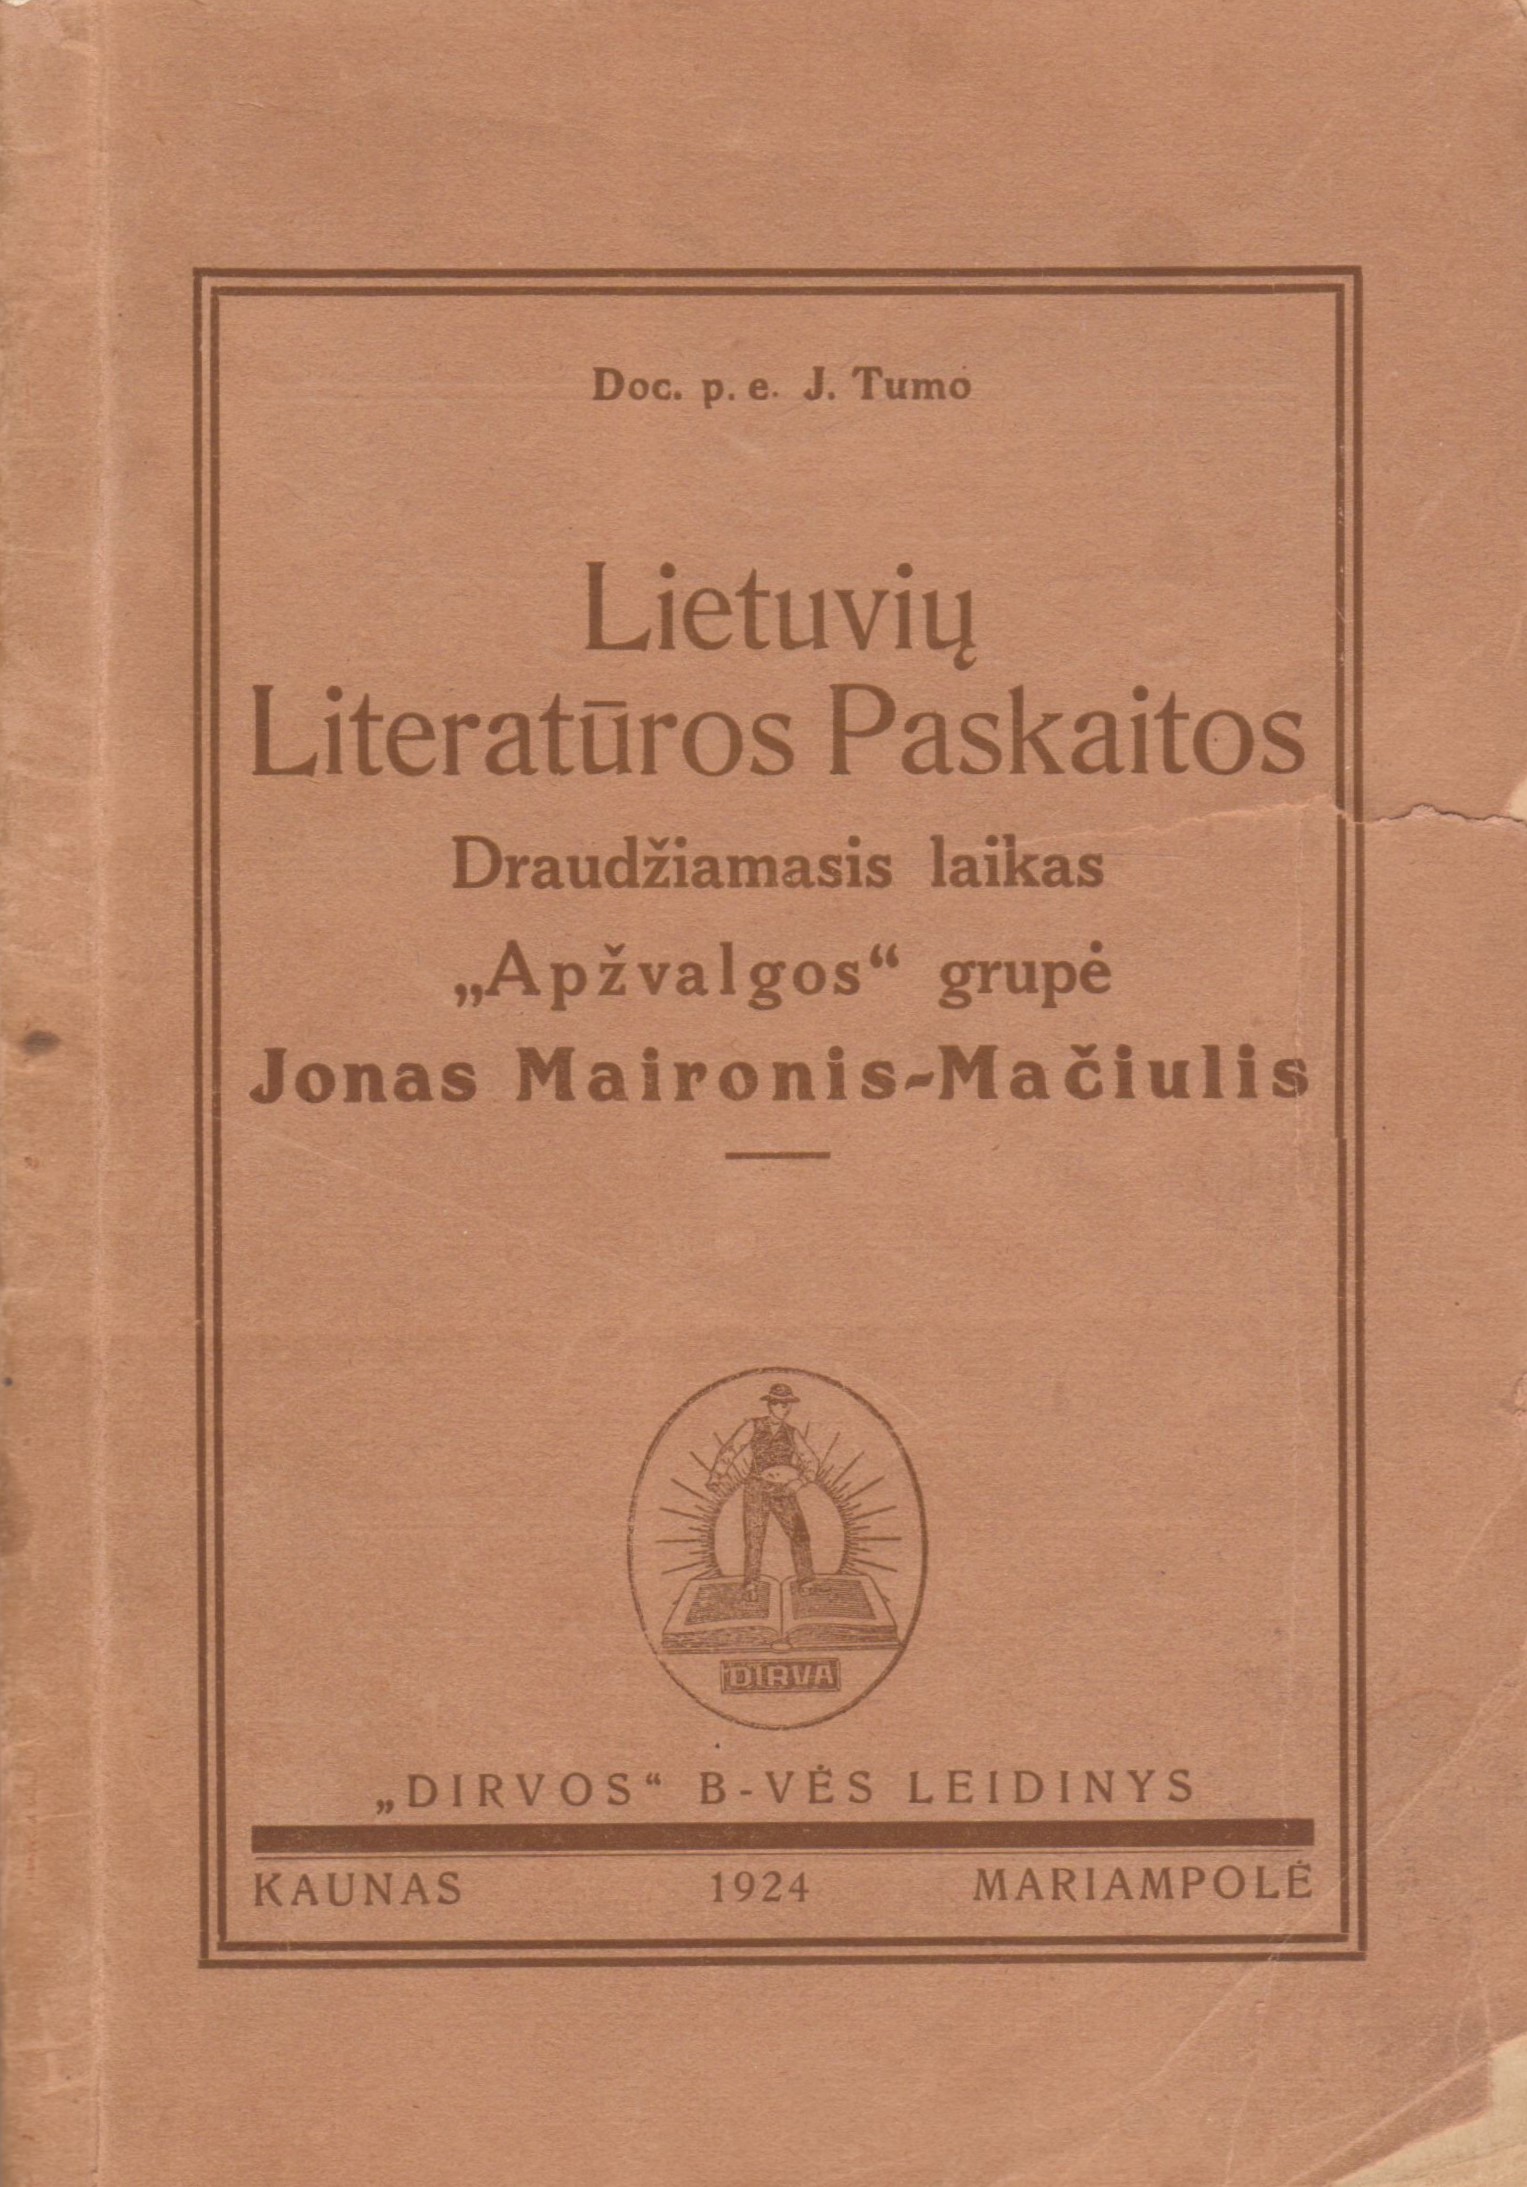 J. Tumas. Lietuvių literatūros paskaitos. Kaunas-Marijampolė. 1924 m. MLLM 1881